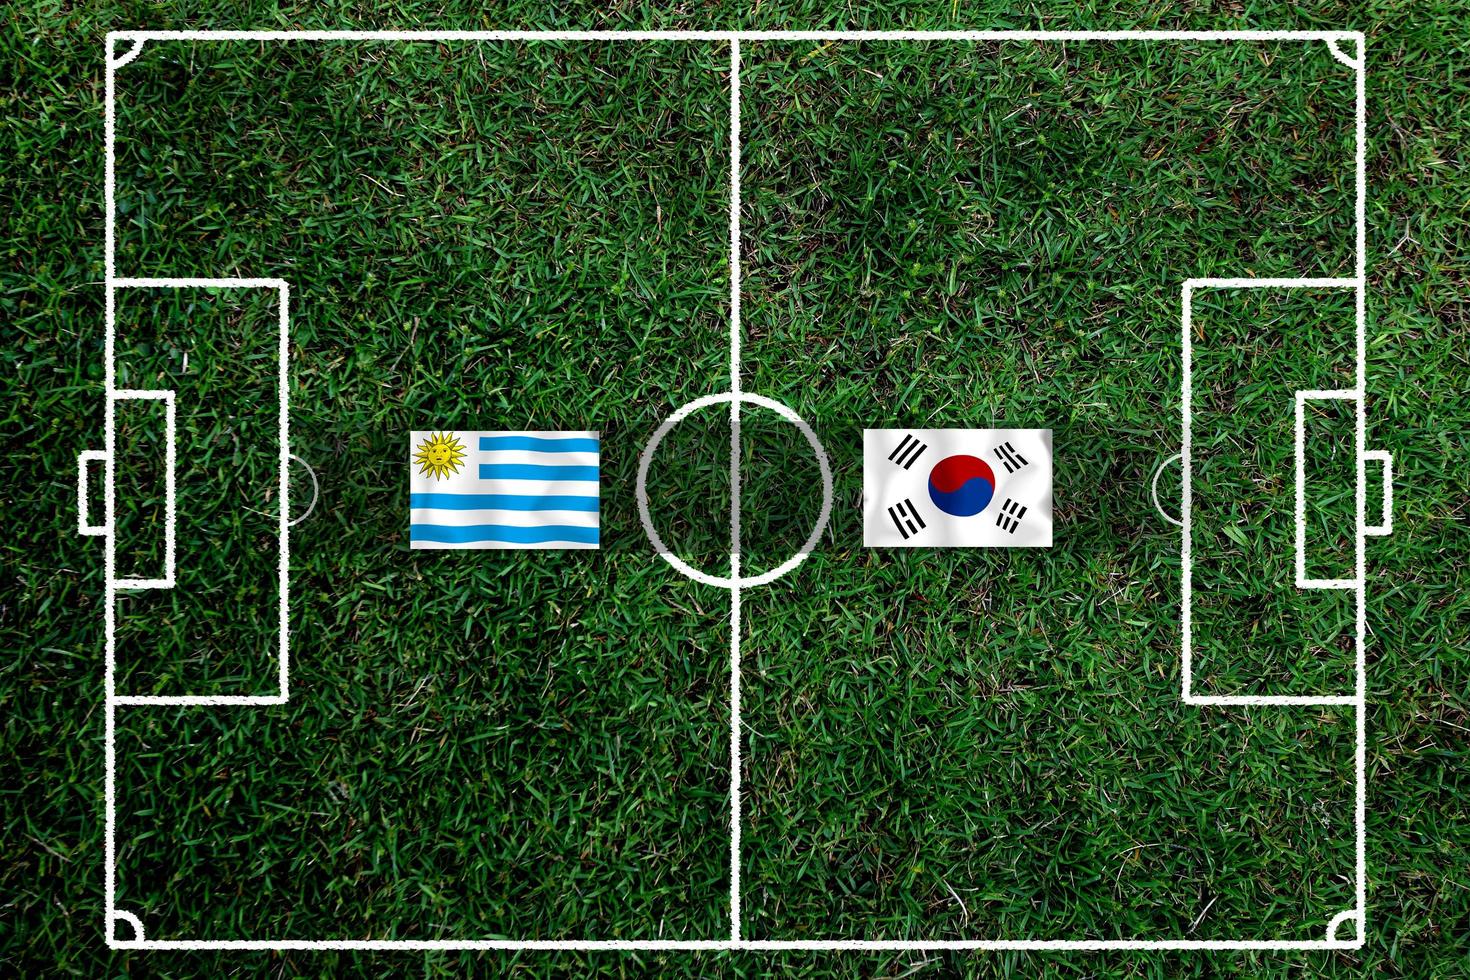 competição de copa de futebol entre o nacional do uruguai e o nacional da coreia do sul. foto